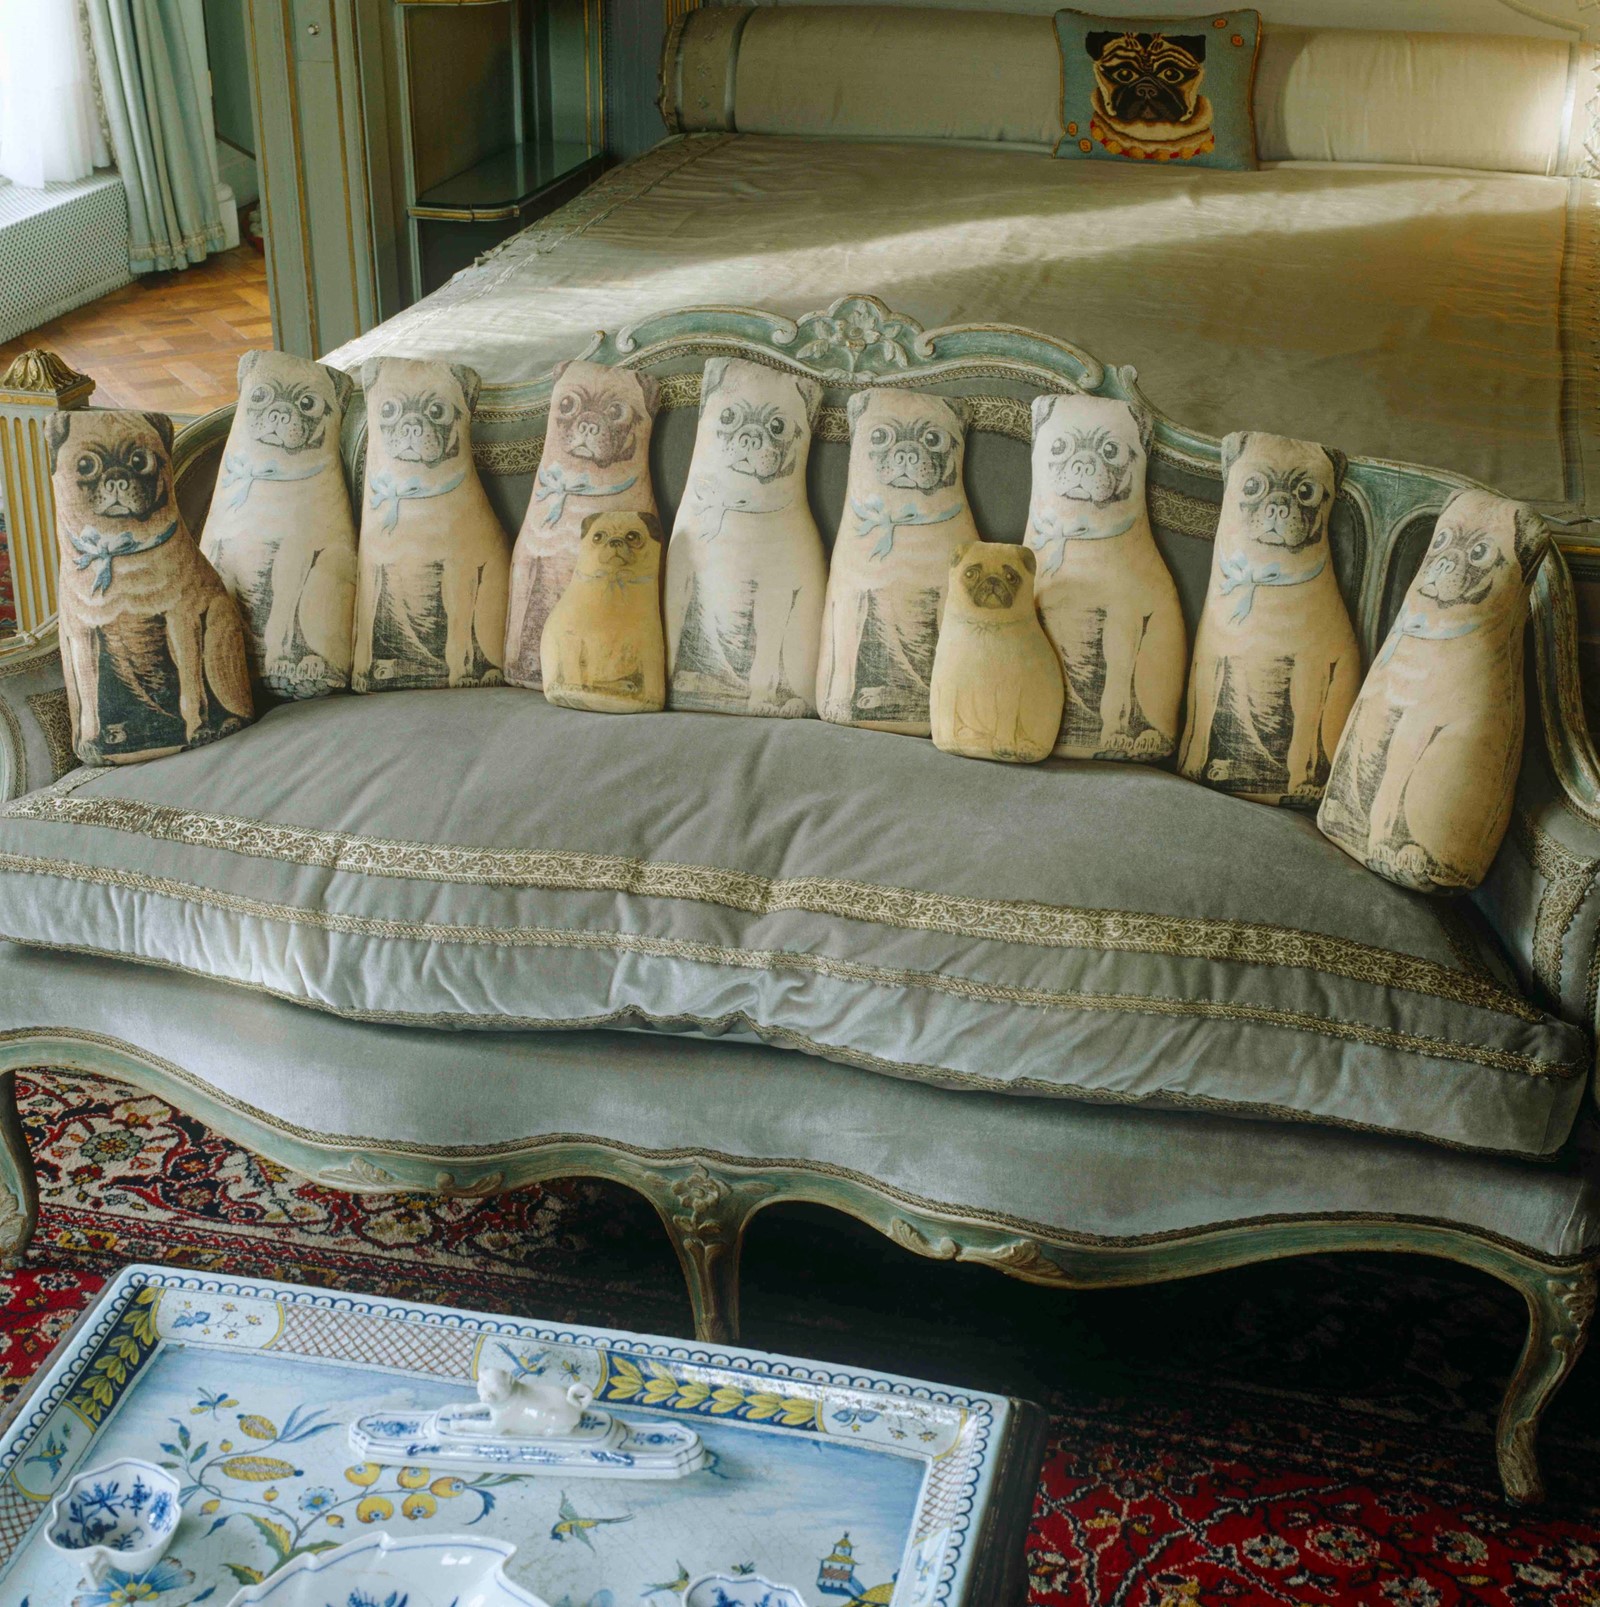 The Duchess of Windsor’s bedroom Wallis Simpson